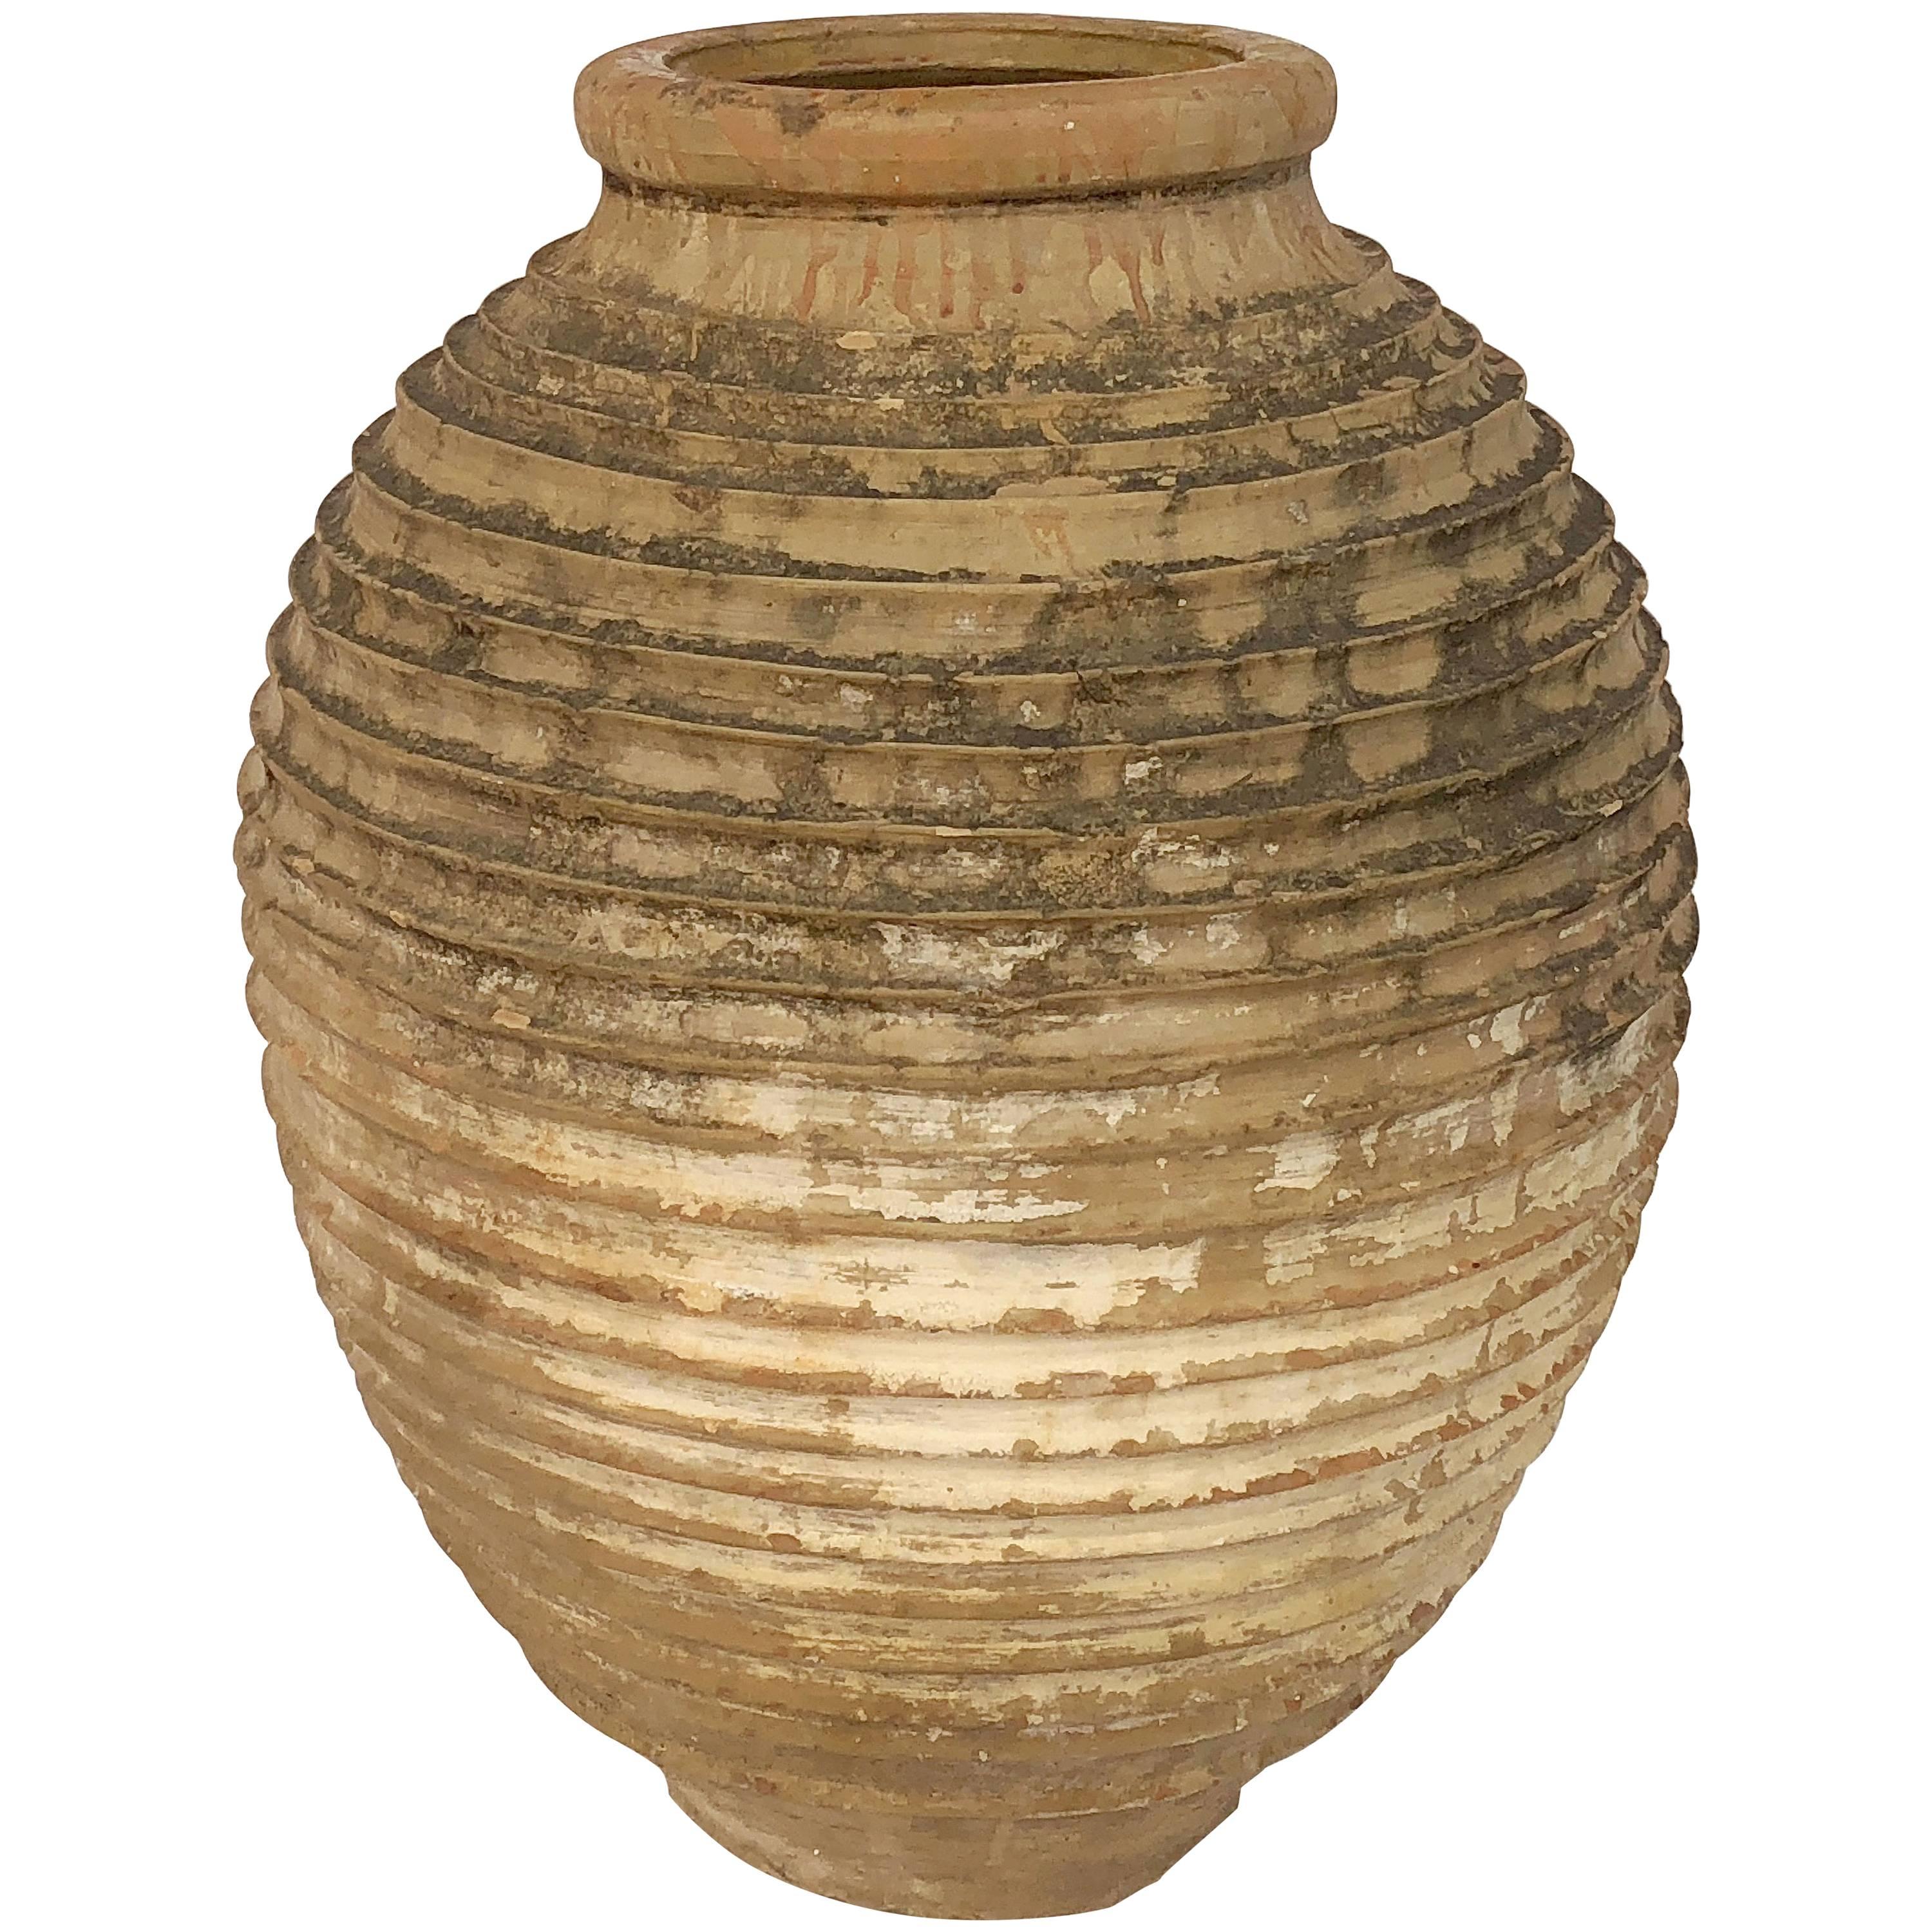 Large Greek Garden Urn or Oil Jar